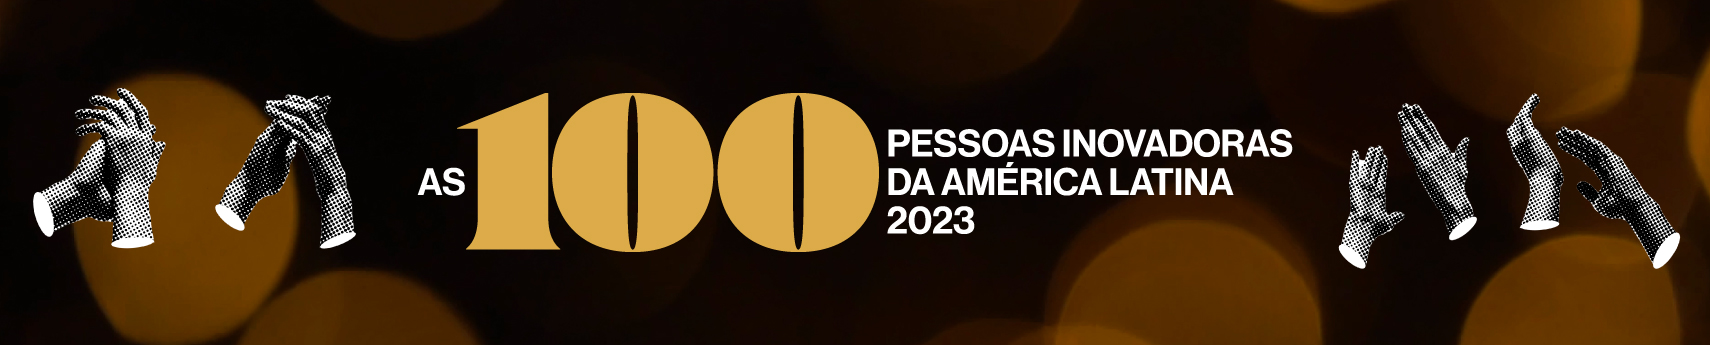 As 100 Pessoas Inovadoras da América Latina 2023